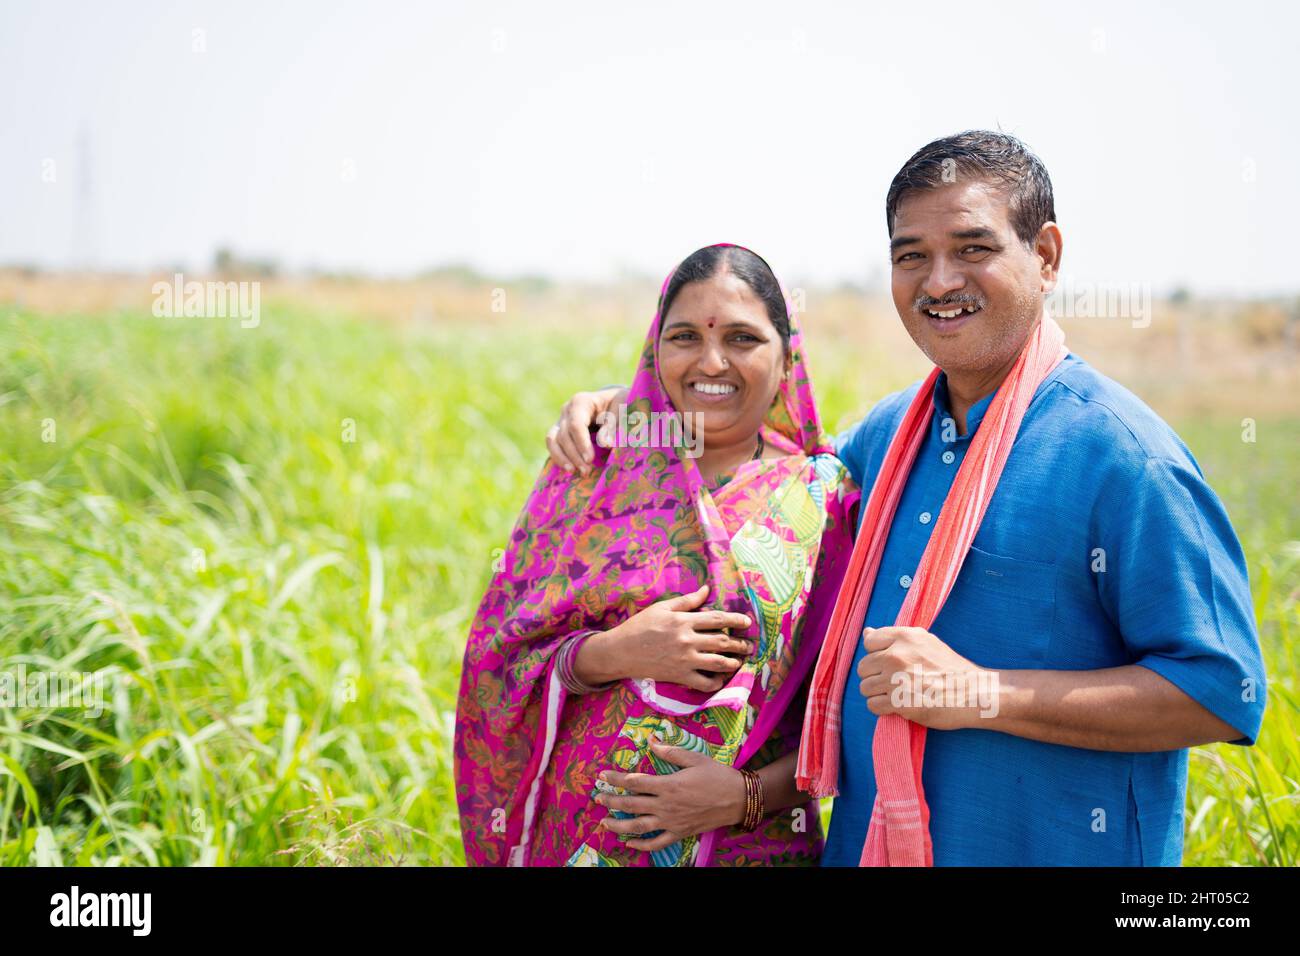 Porträtaufnahme eines lächelnden indischen Dorfpaares auf der Wiese mit Blick auf die Kamera - Konzept von glücklicher Familie, ländlichem Lebensstil und Zweisamkeit Stockfoto